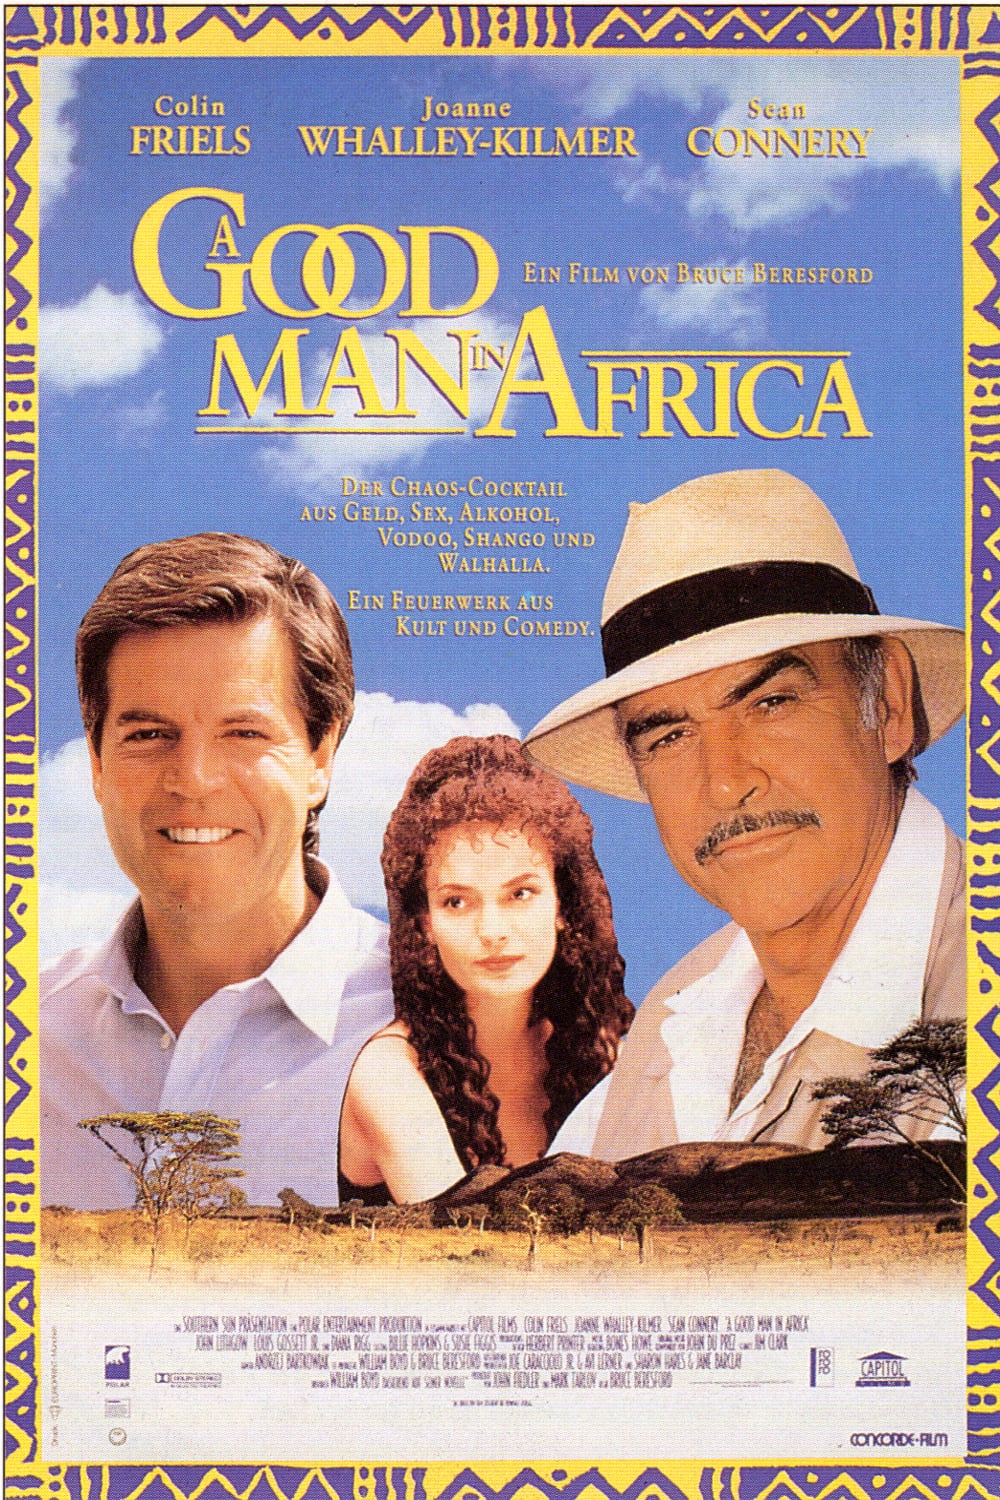 Plakat von "A Good Man in Africa"